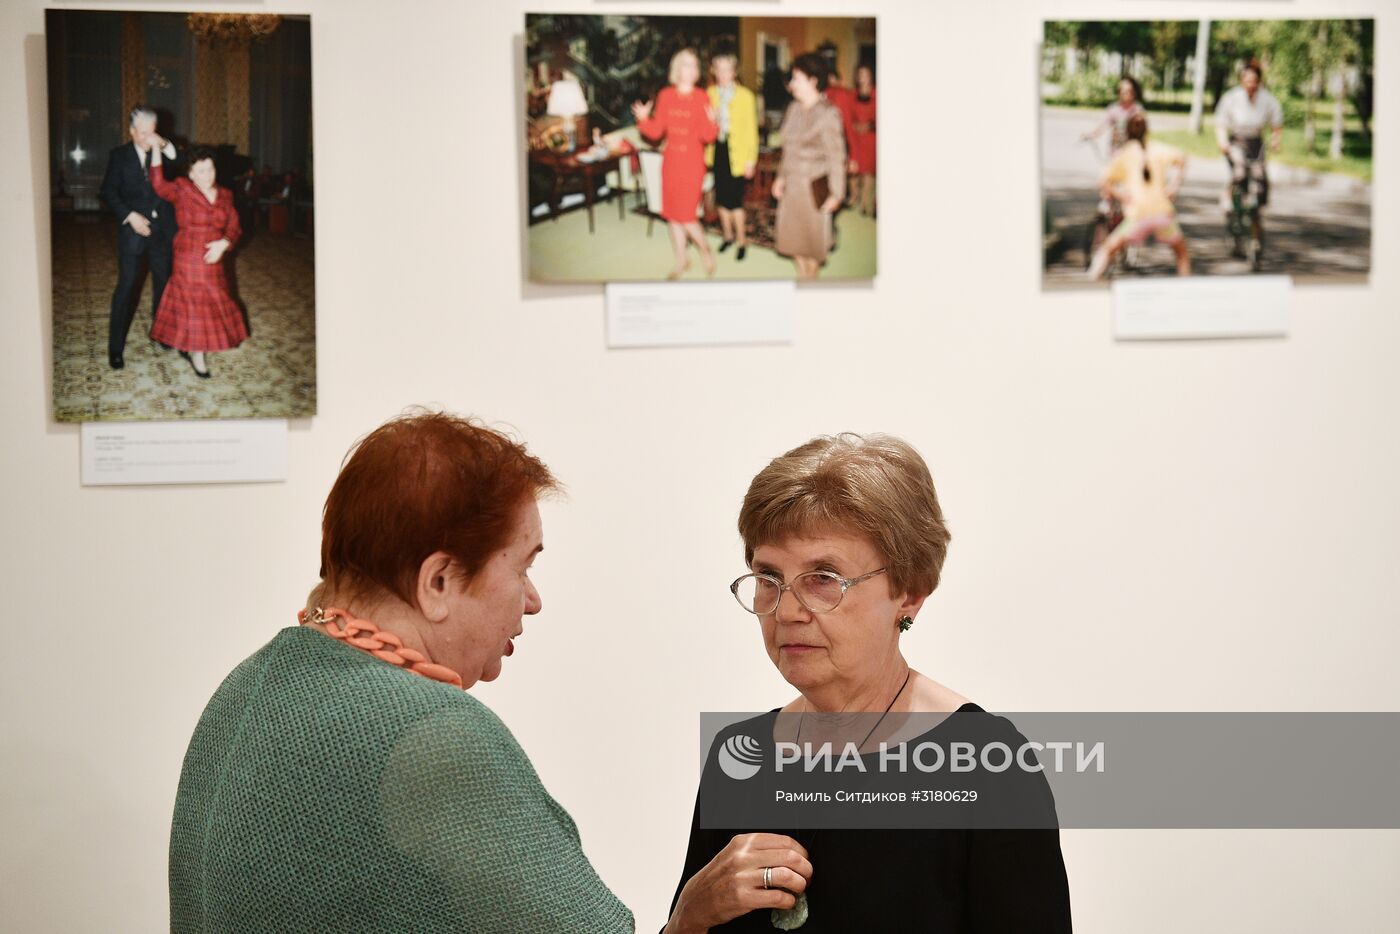 Персональная выставка фотографа Дмитрия Донского "Я снимал параллельные миры"